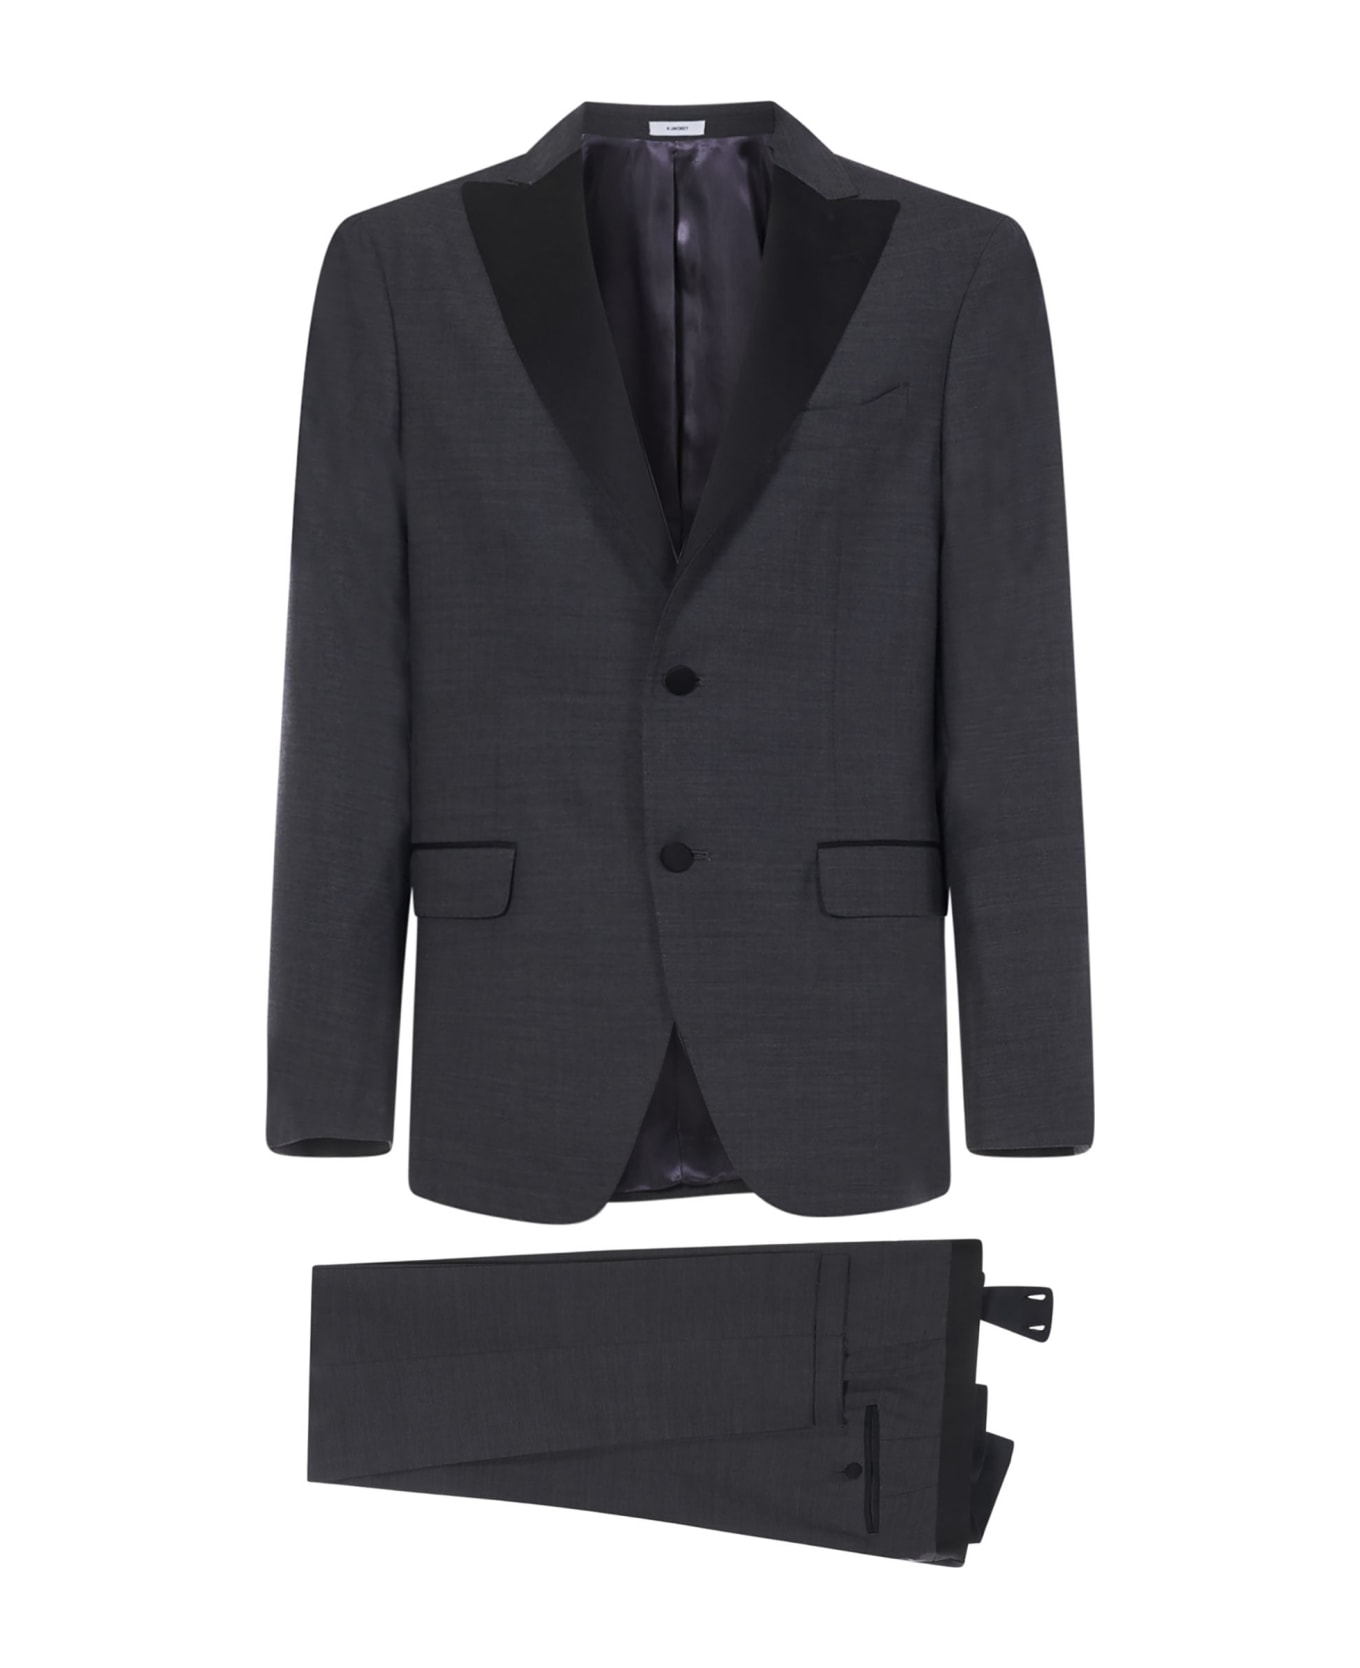 Boglioli Suit - Grey